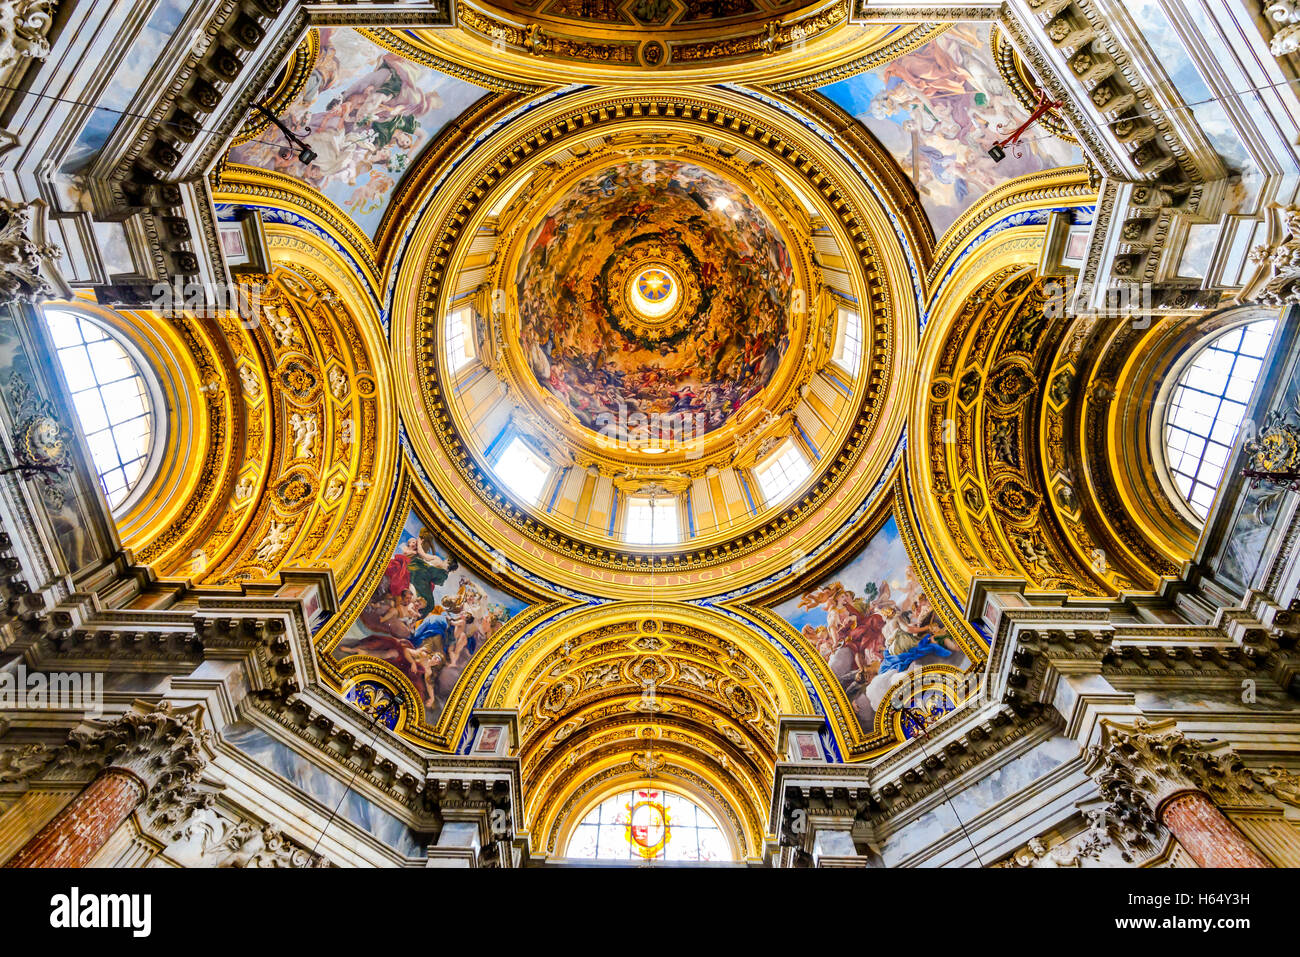 Das wunderschöne Gewölbe des Sant'Agnese in Agone, einer Basilika auf der Piazza Navona, Rom, Italien. Stockfoto